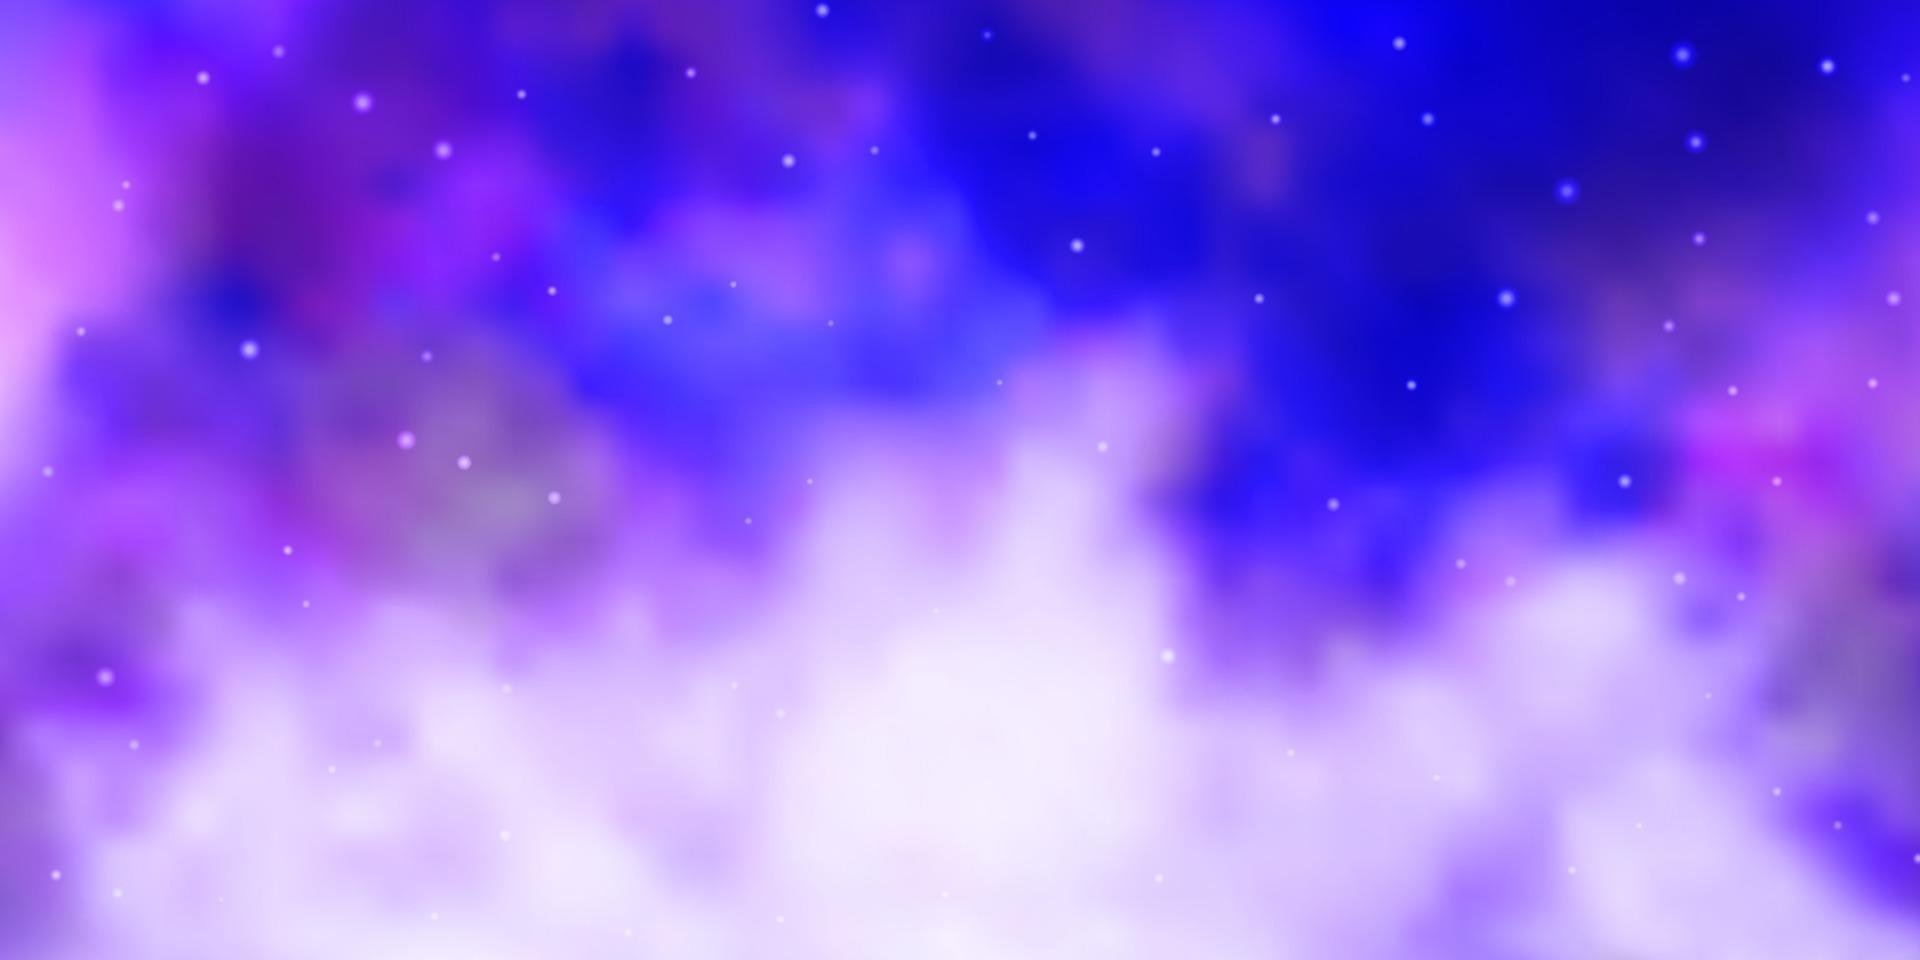 Fondo de vector púrpura claro con estrellas de colores.